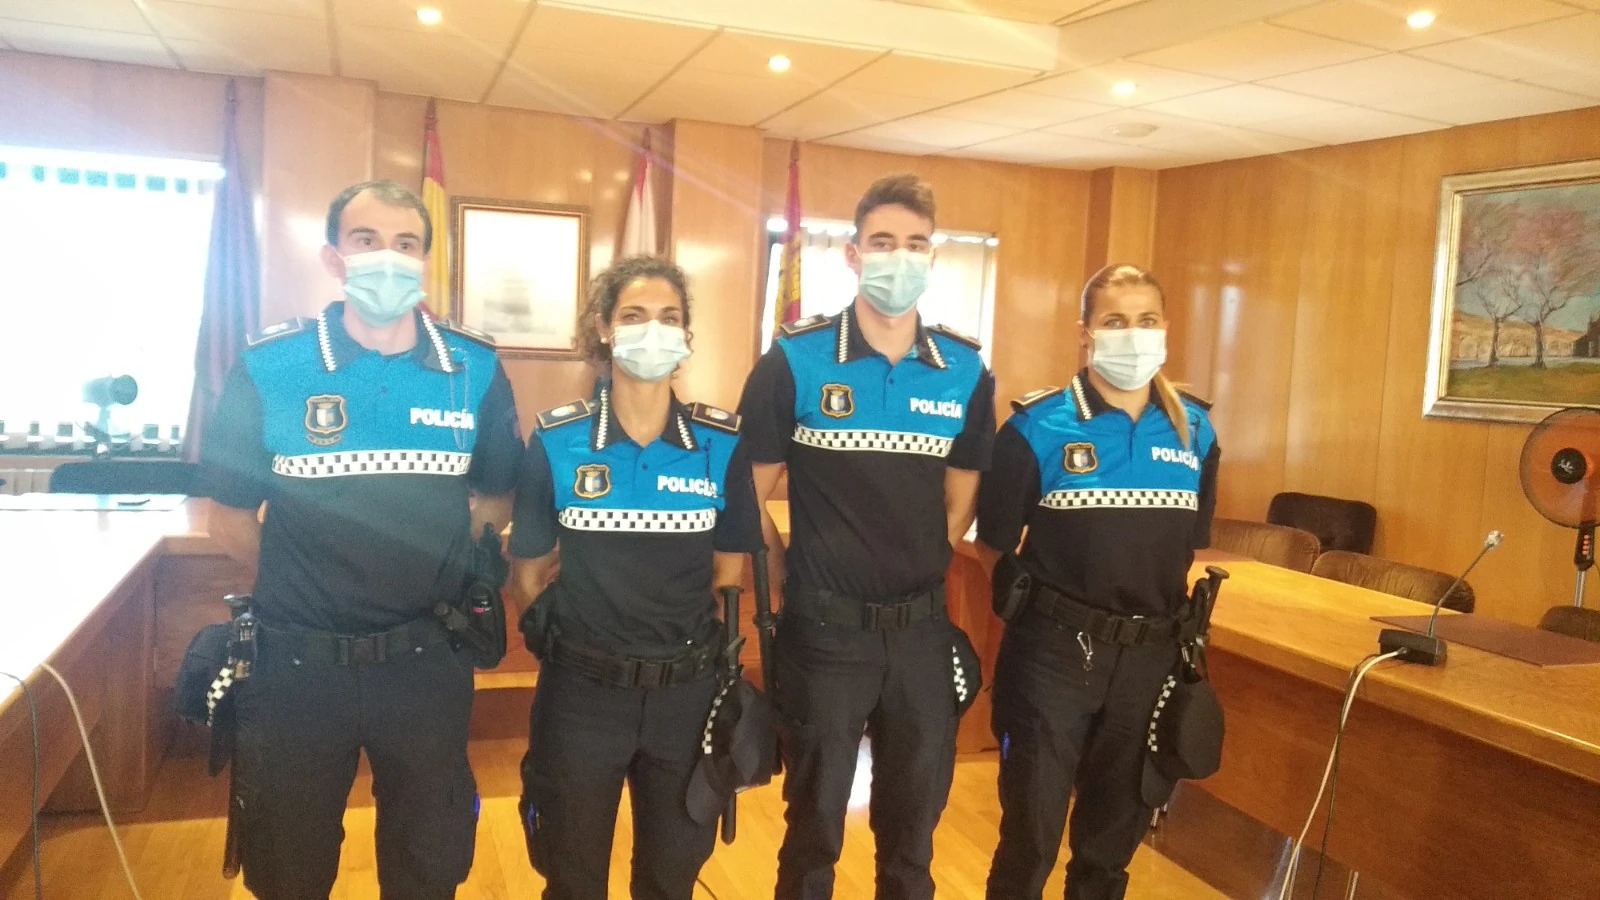 Fotos: Bembibre refuerza la plantilla de la Policía Local con 4 nuevos agentes